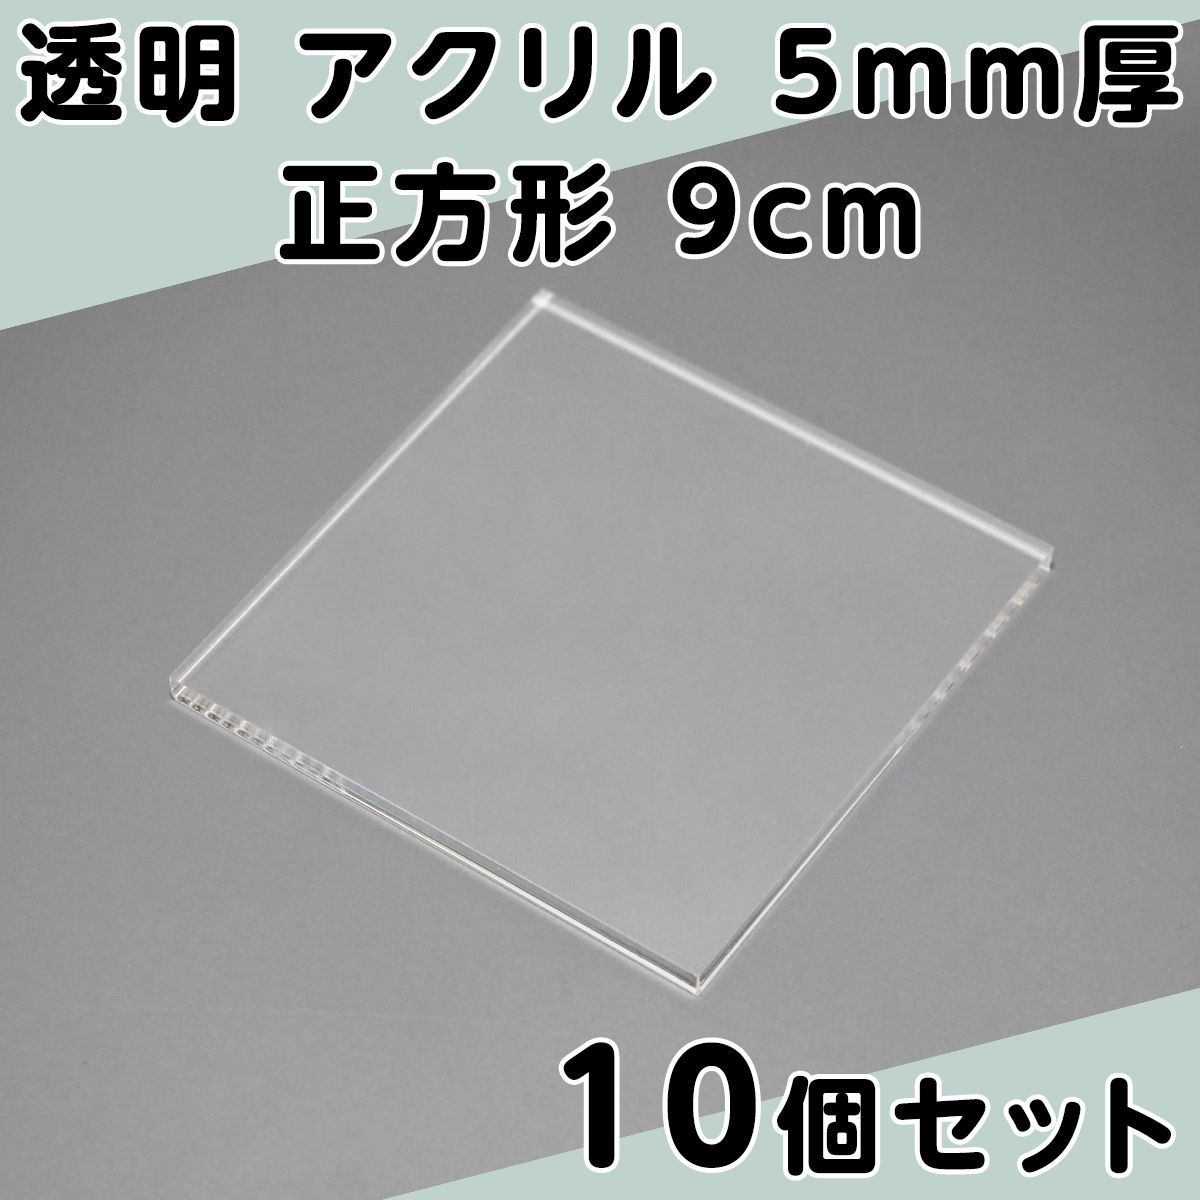 透明 アクリル 5mm厚 正方形 9cm 10個セット